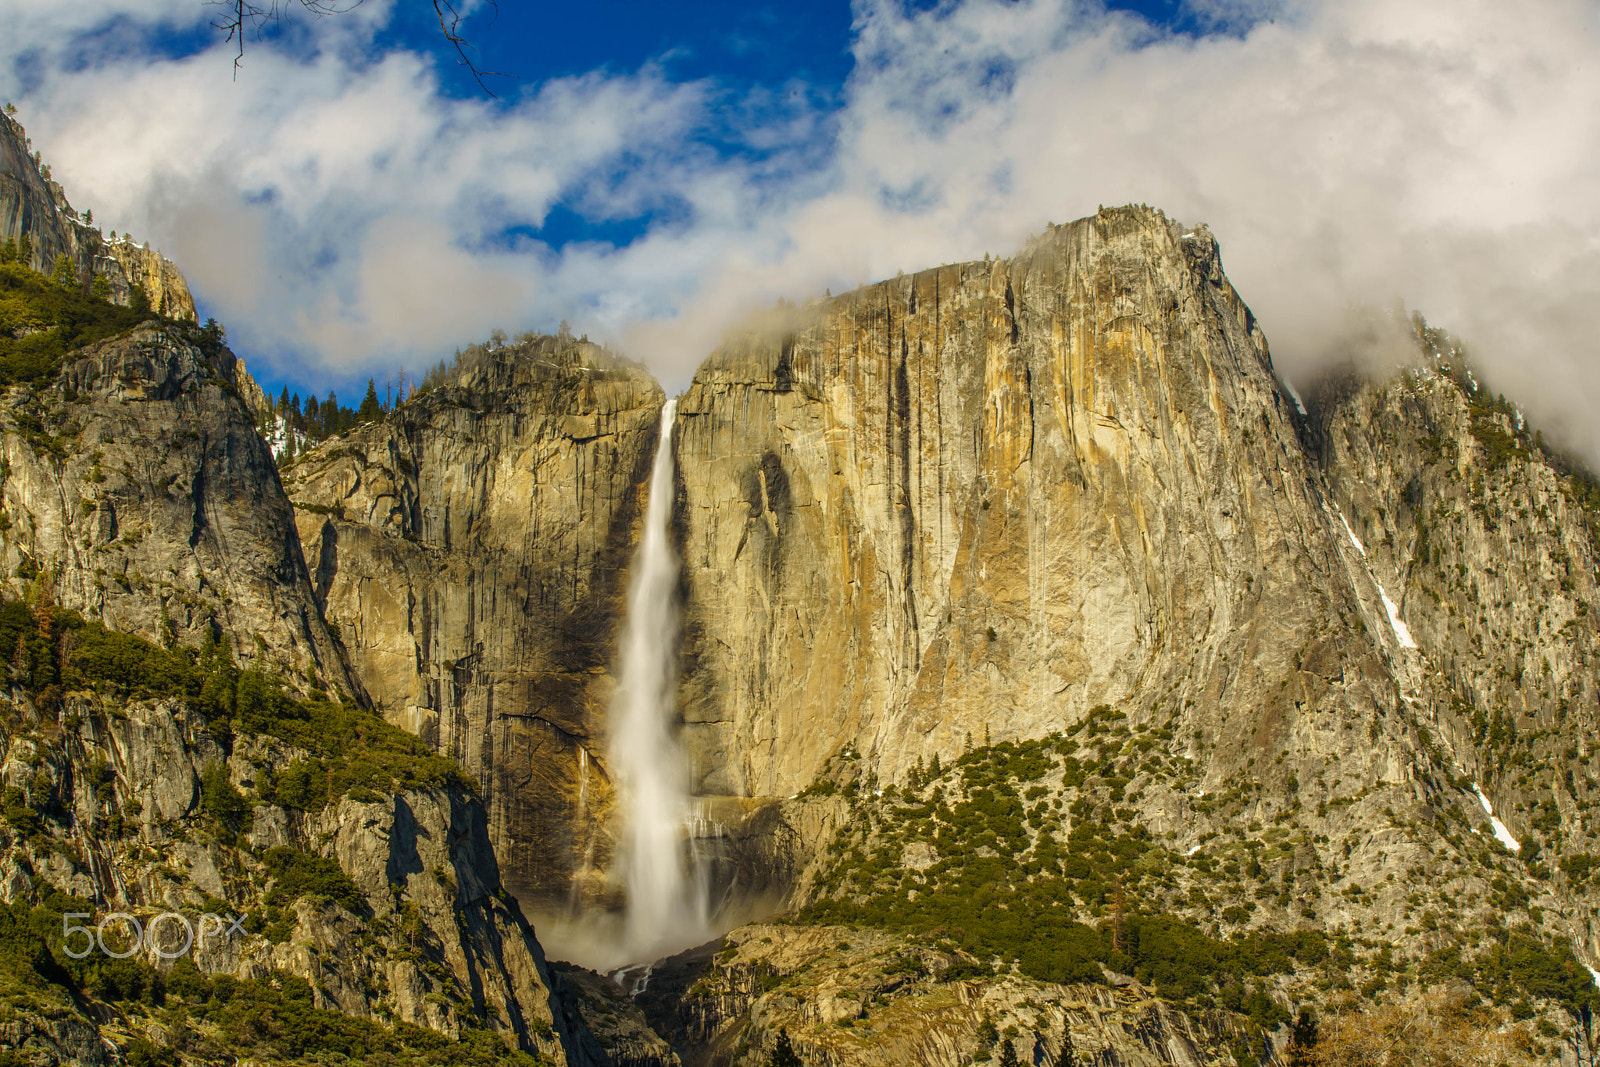 Sony a7R II + Canon EF 70-200mm F2.8L IS II USM sample photo. Yosemite waterfalls photography